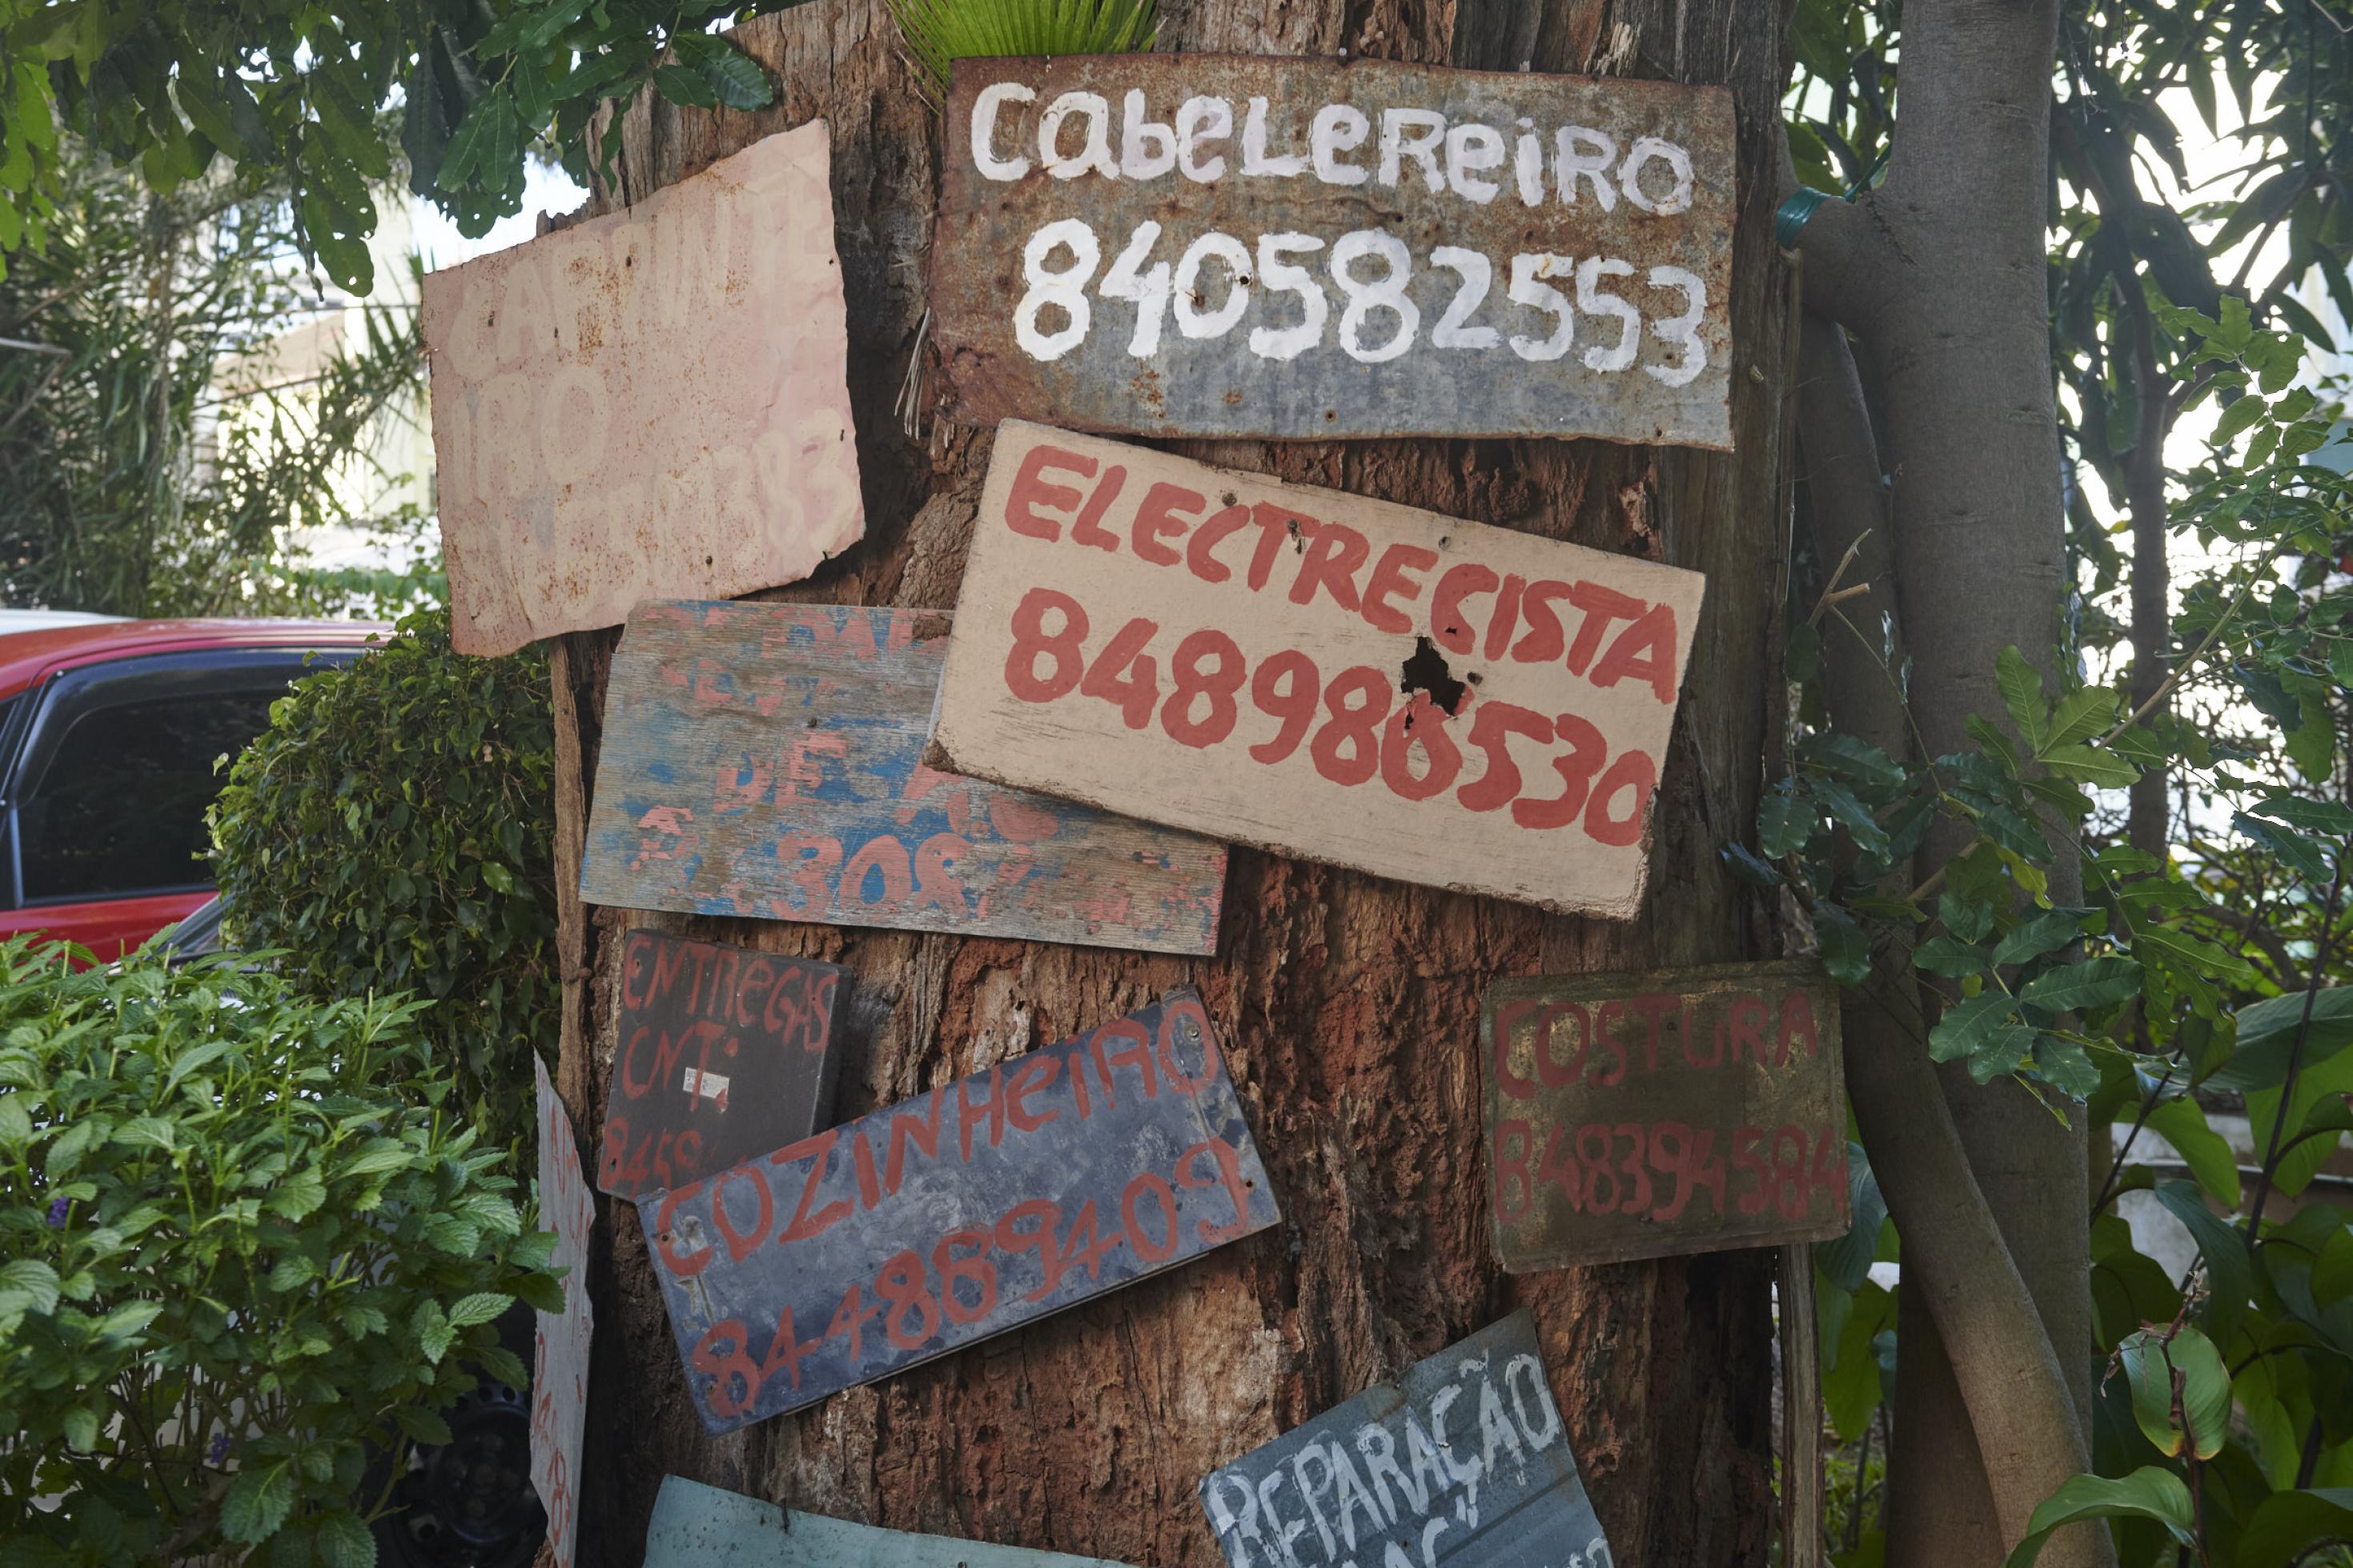 An einem Baumstamm sind mehrere handgemalte Schilder befestigt, darauf stehen die Berufe und Telefonnummern der Arbeiter